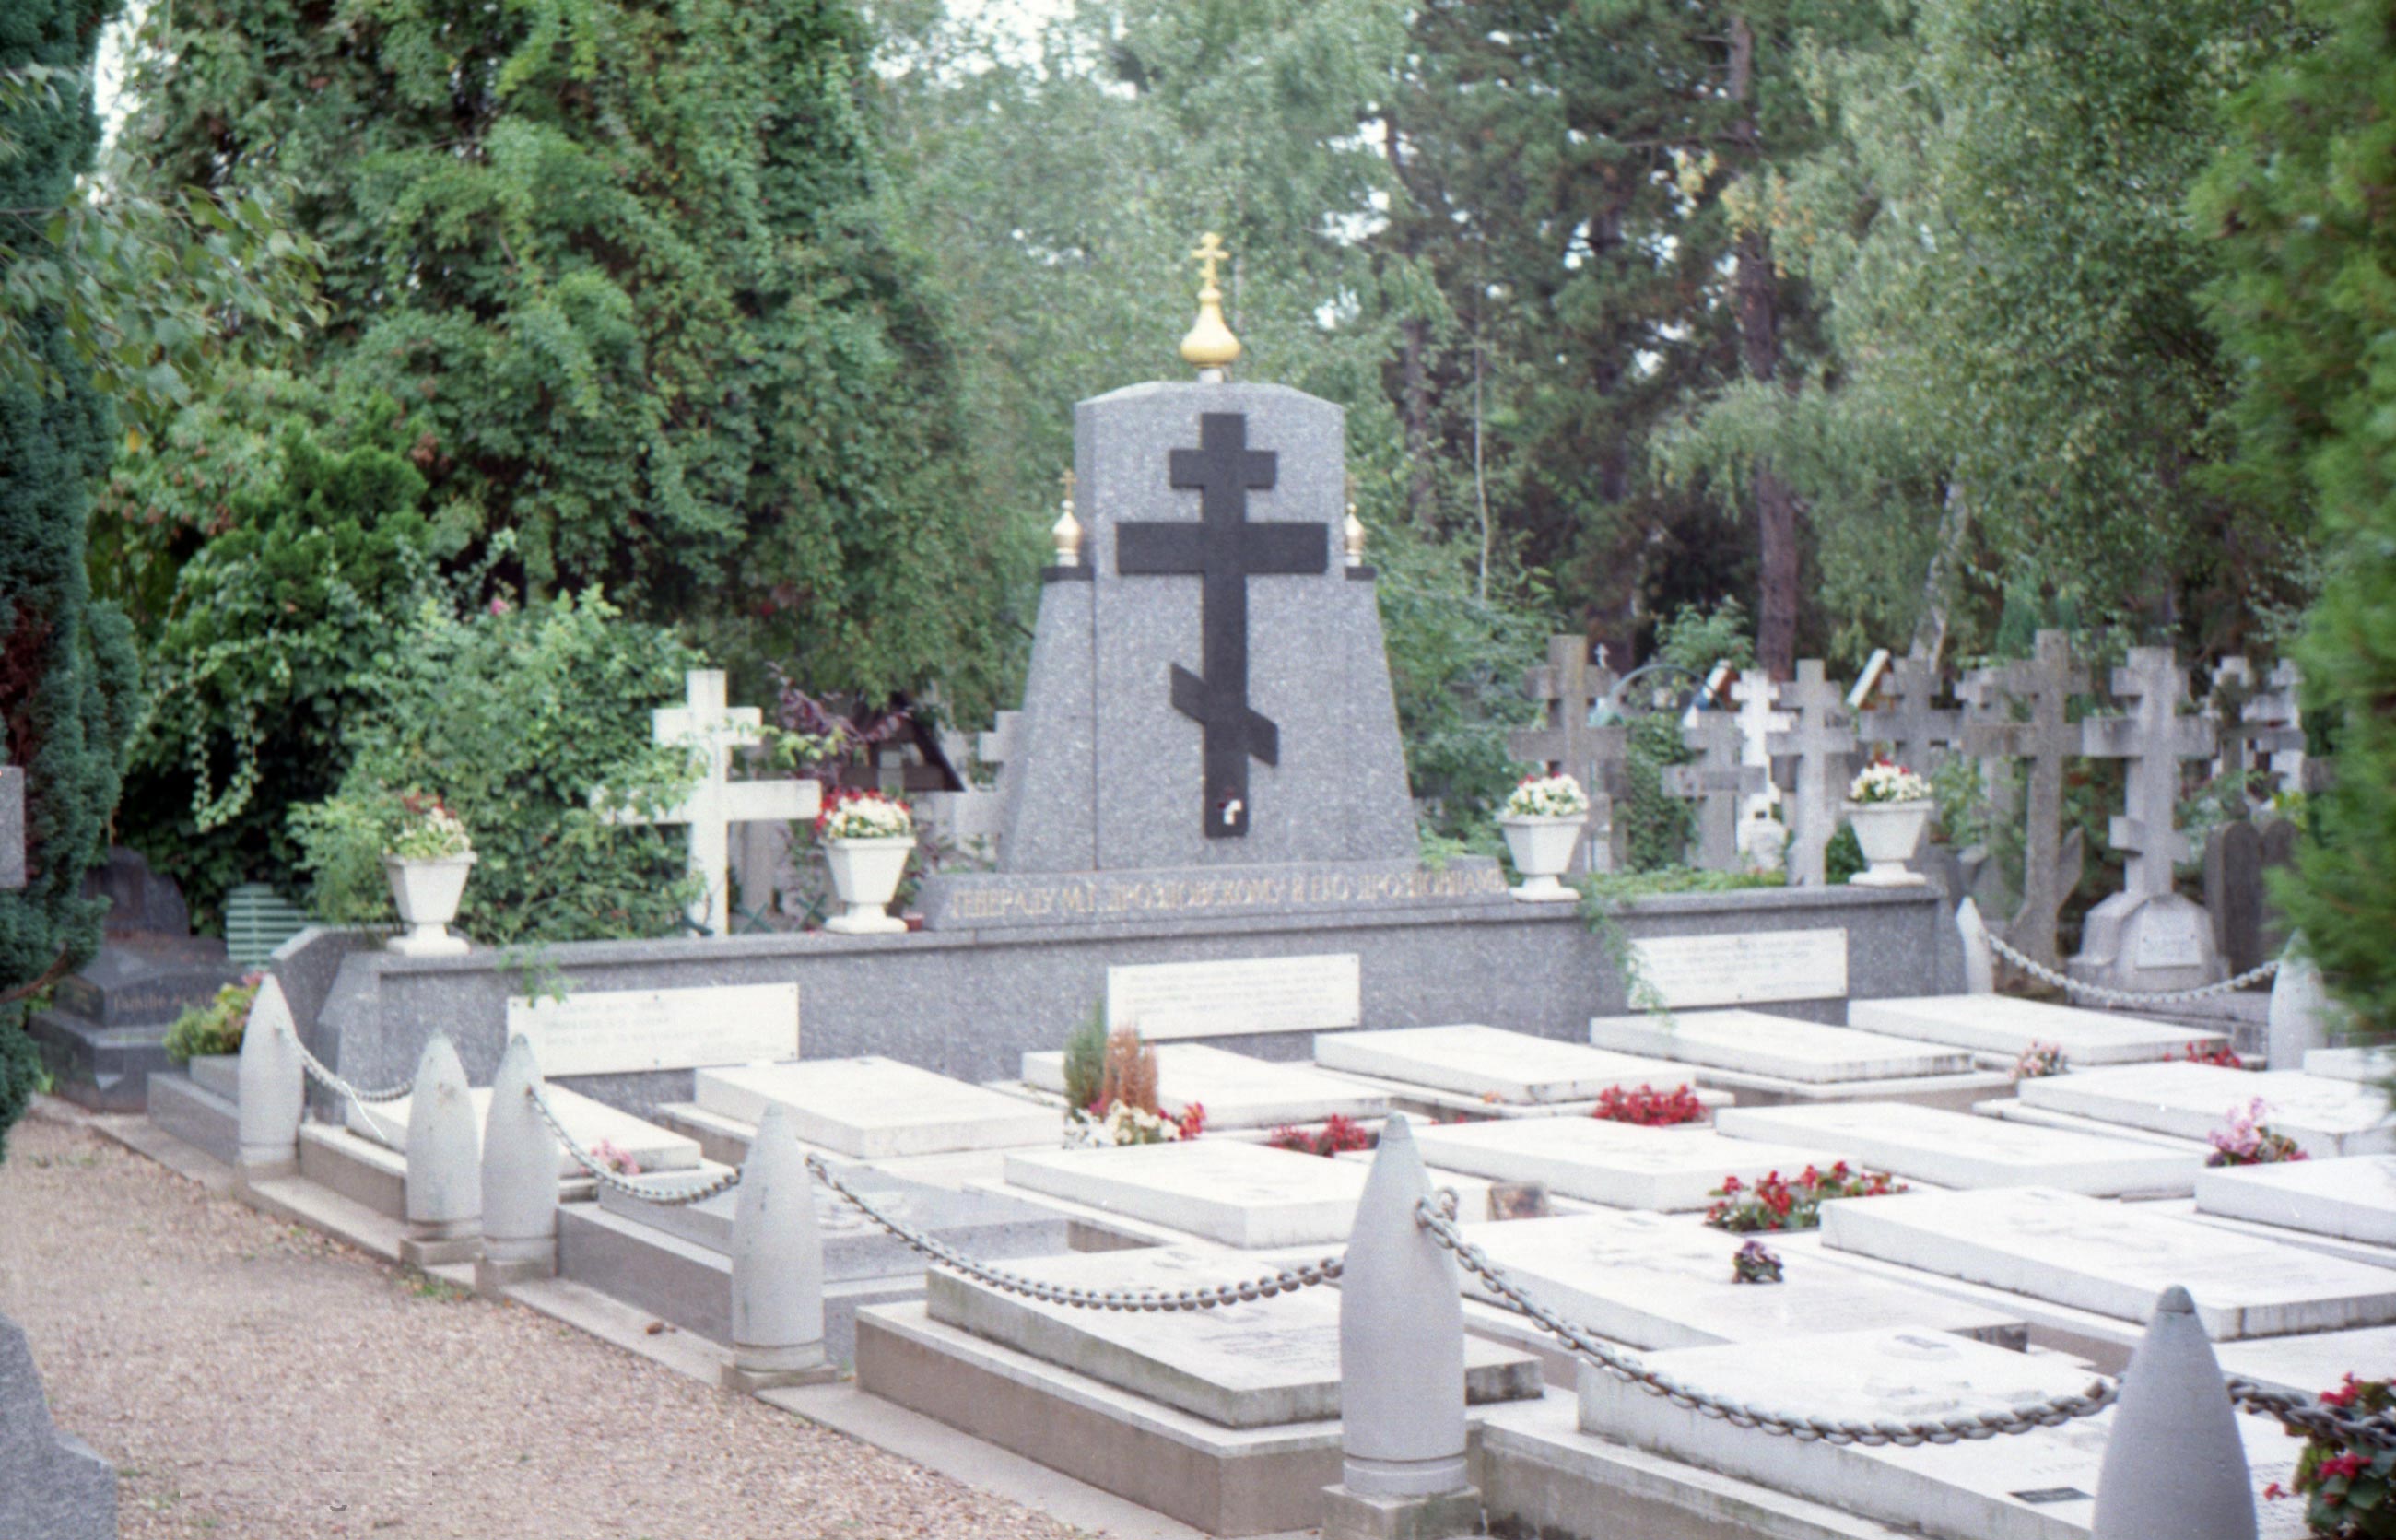 Похоронен во франции. Русское кладбище сент-Женевьев-де-Буа. Некрополь в сент-Женевьев-де-Буа. Русское кладбище во Франции сент-Женевьев-де-Буа. Русское кладбище в Париже сен Женевьев.